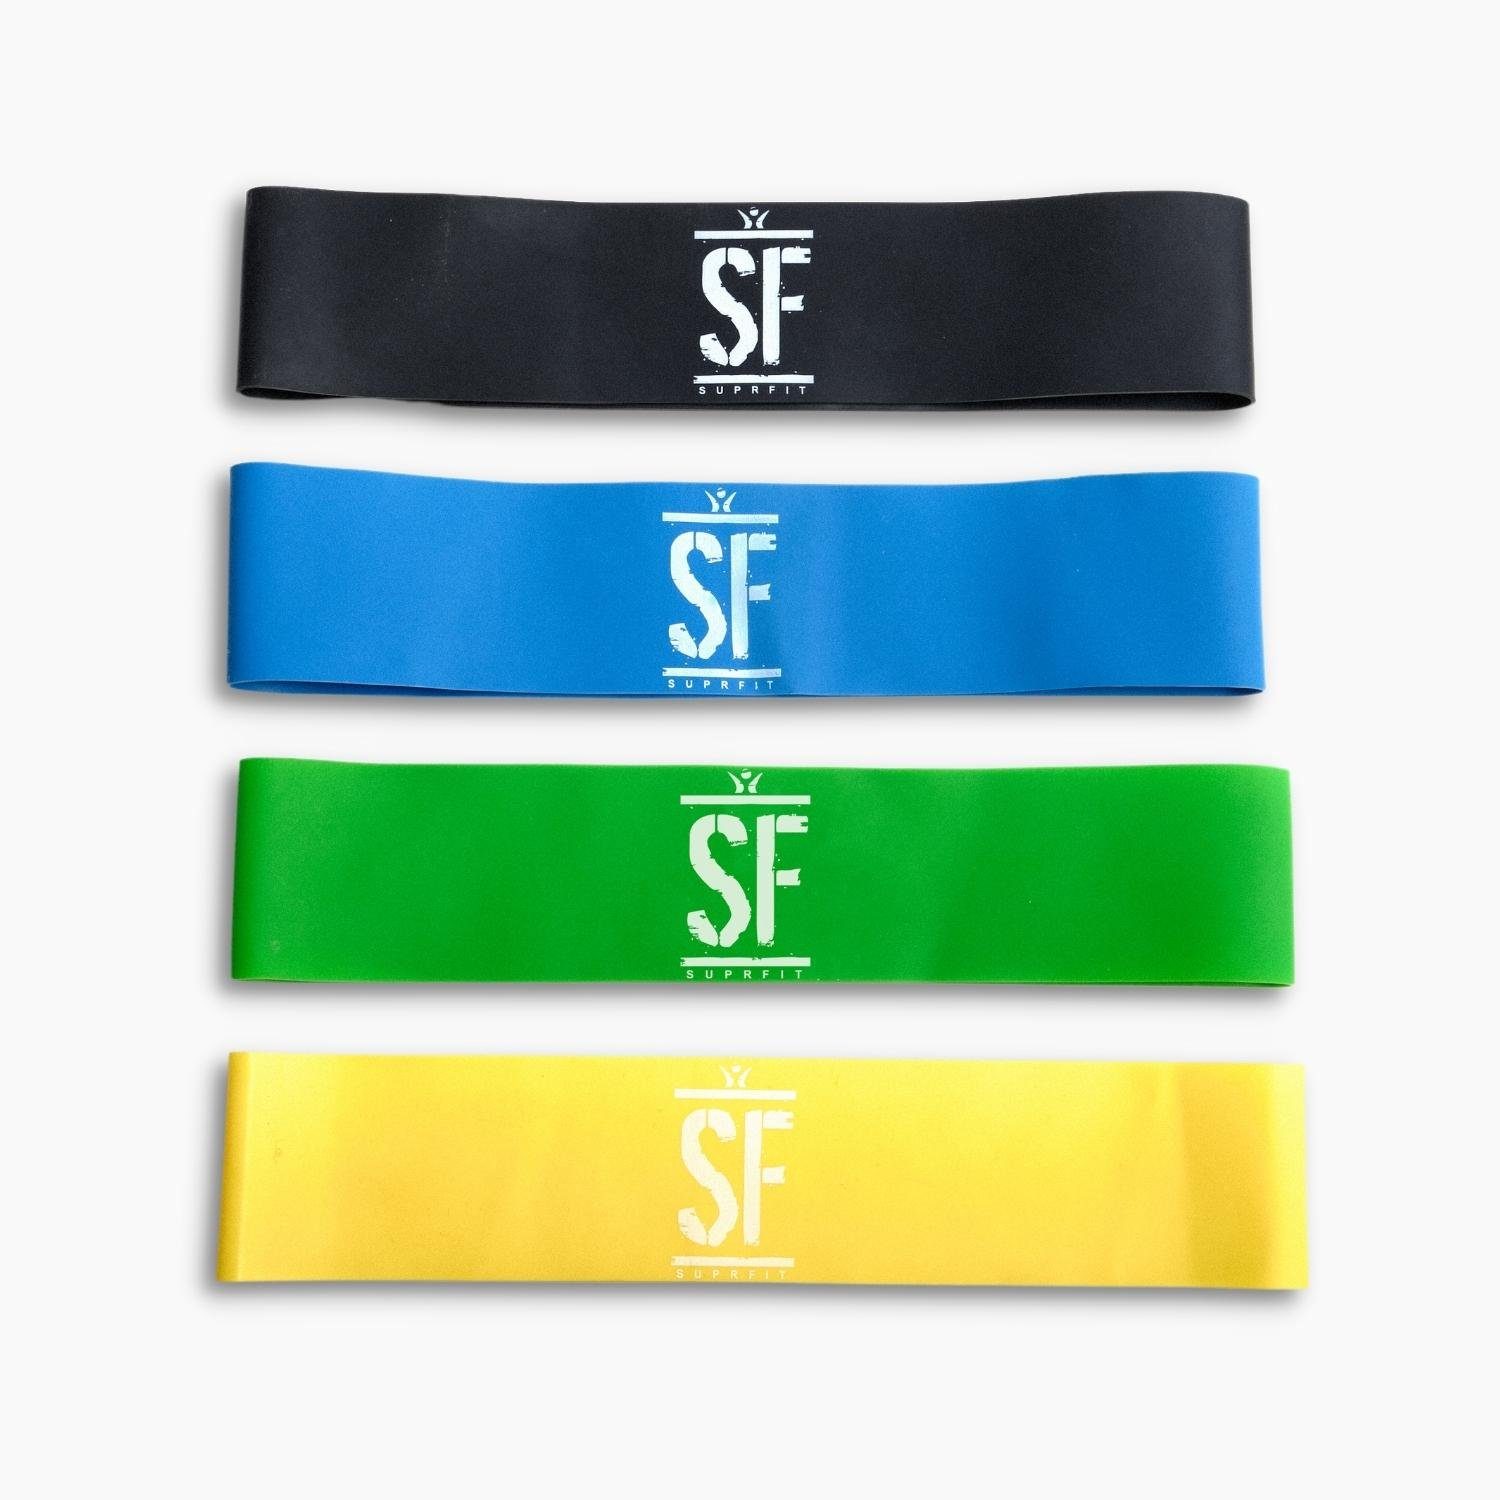 SF SUPRFIT Trainingsbänder Miniband Set 4 Fitnessbänder mit unterschiedlichen Widerstandsstufen, 100% Latex